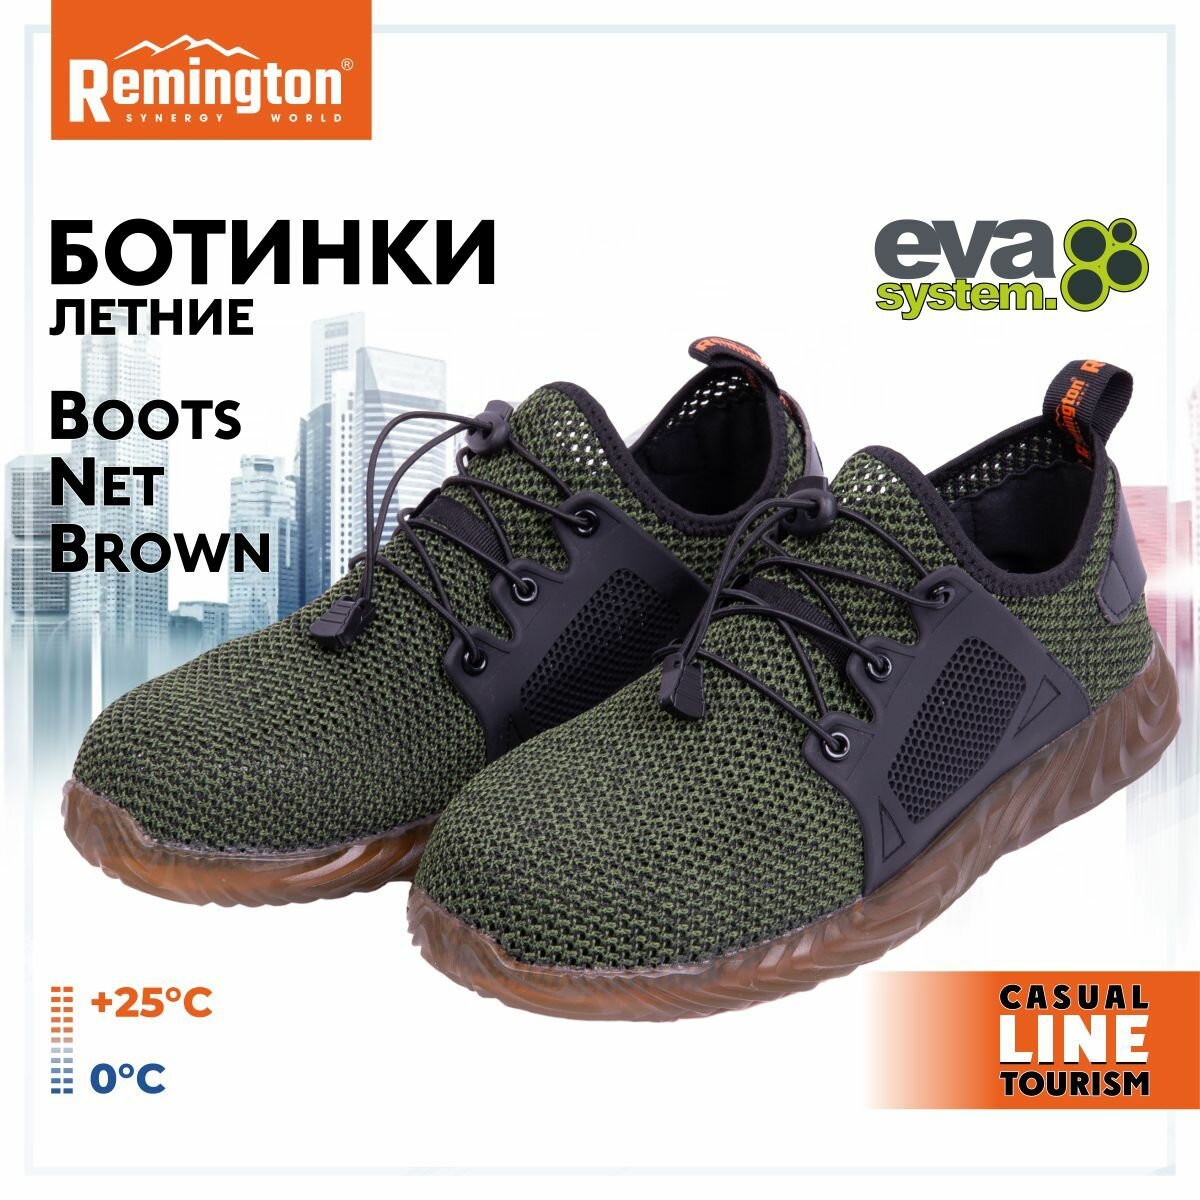 Ботинки Remington Boots Net Brown р. 44 RU0044-901